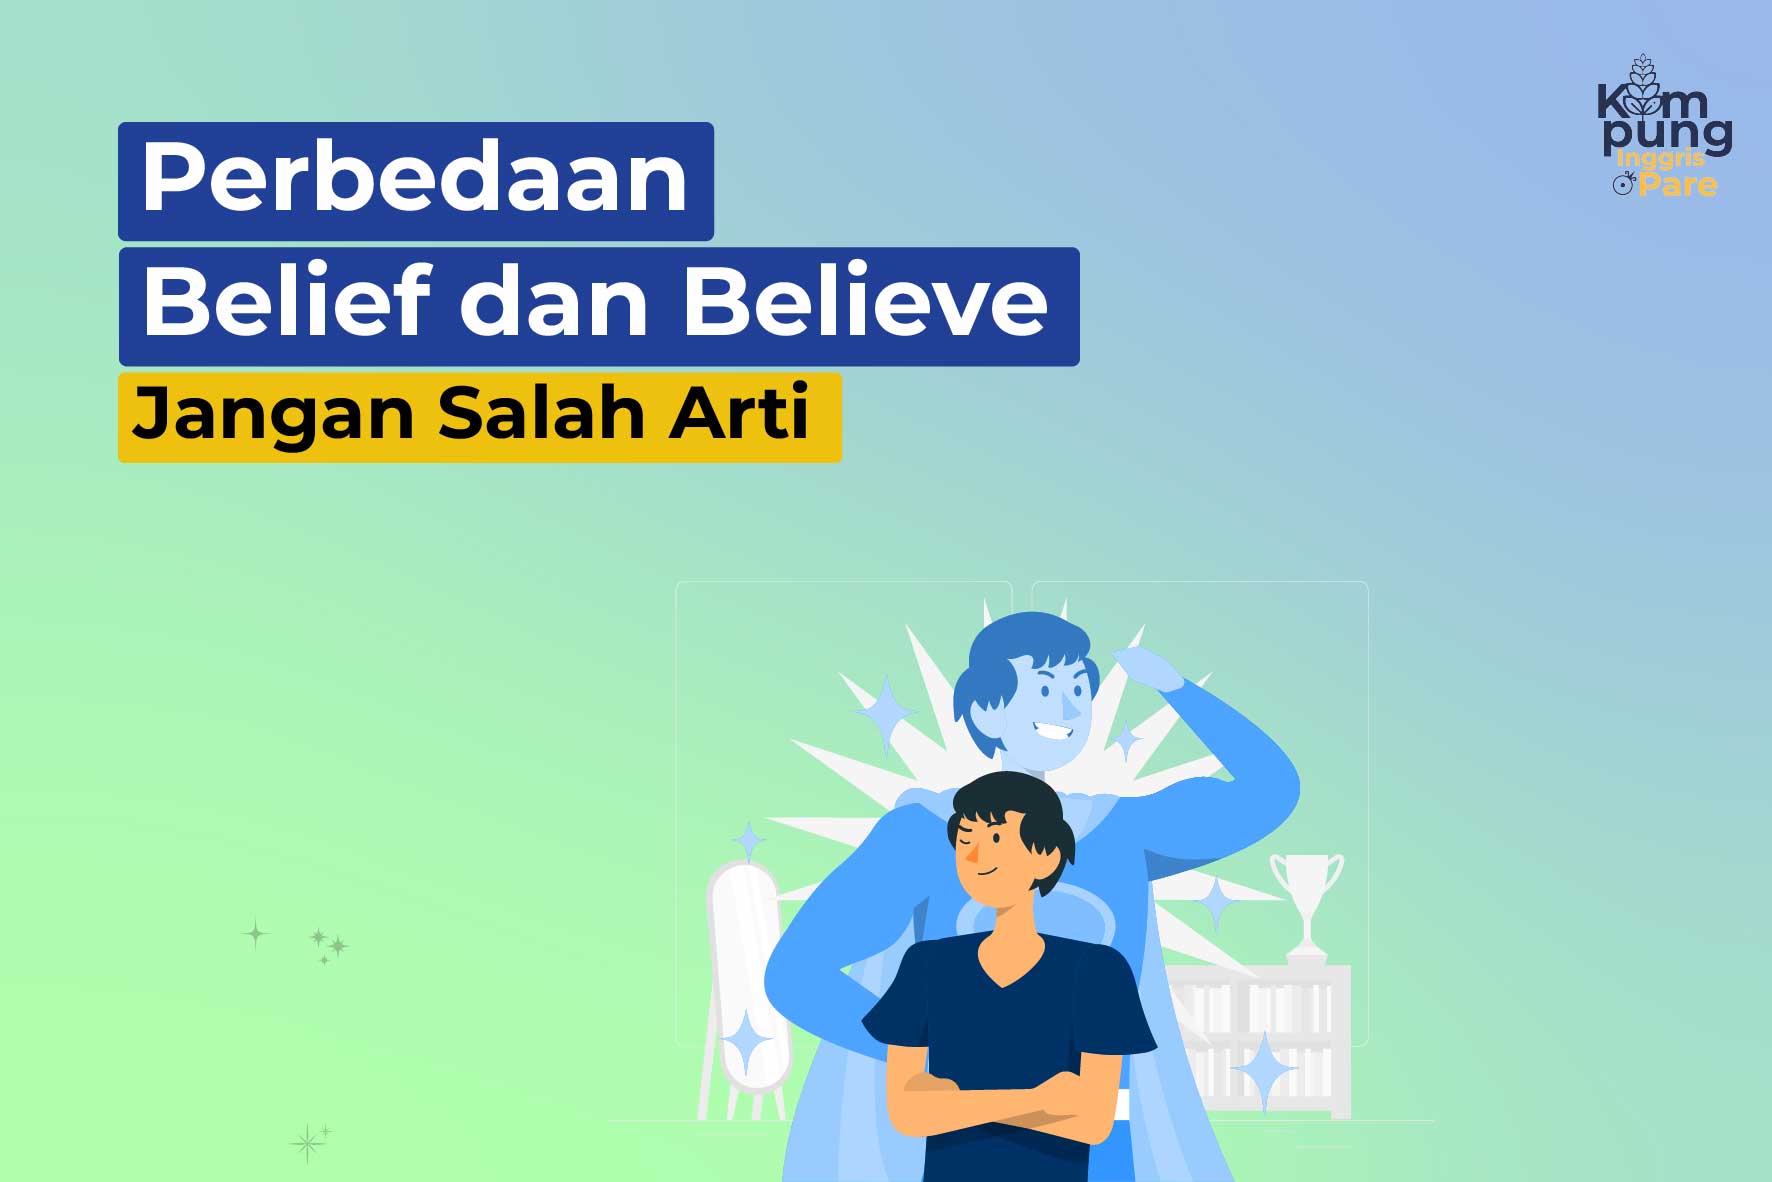 Perbedaan belief dan believe